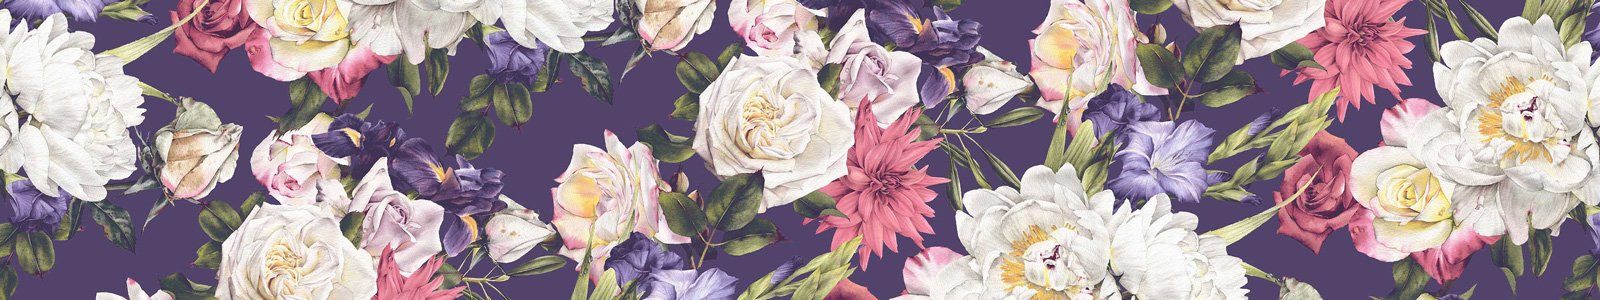 №7336 - Акварельные цветы на фиолетовом фоне